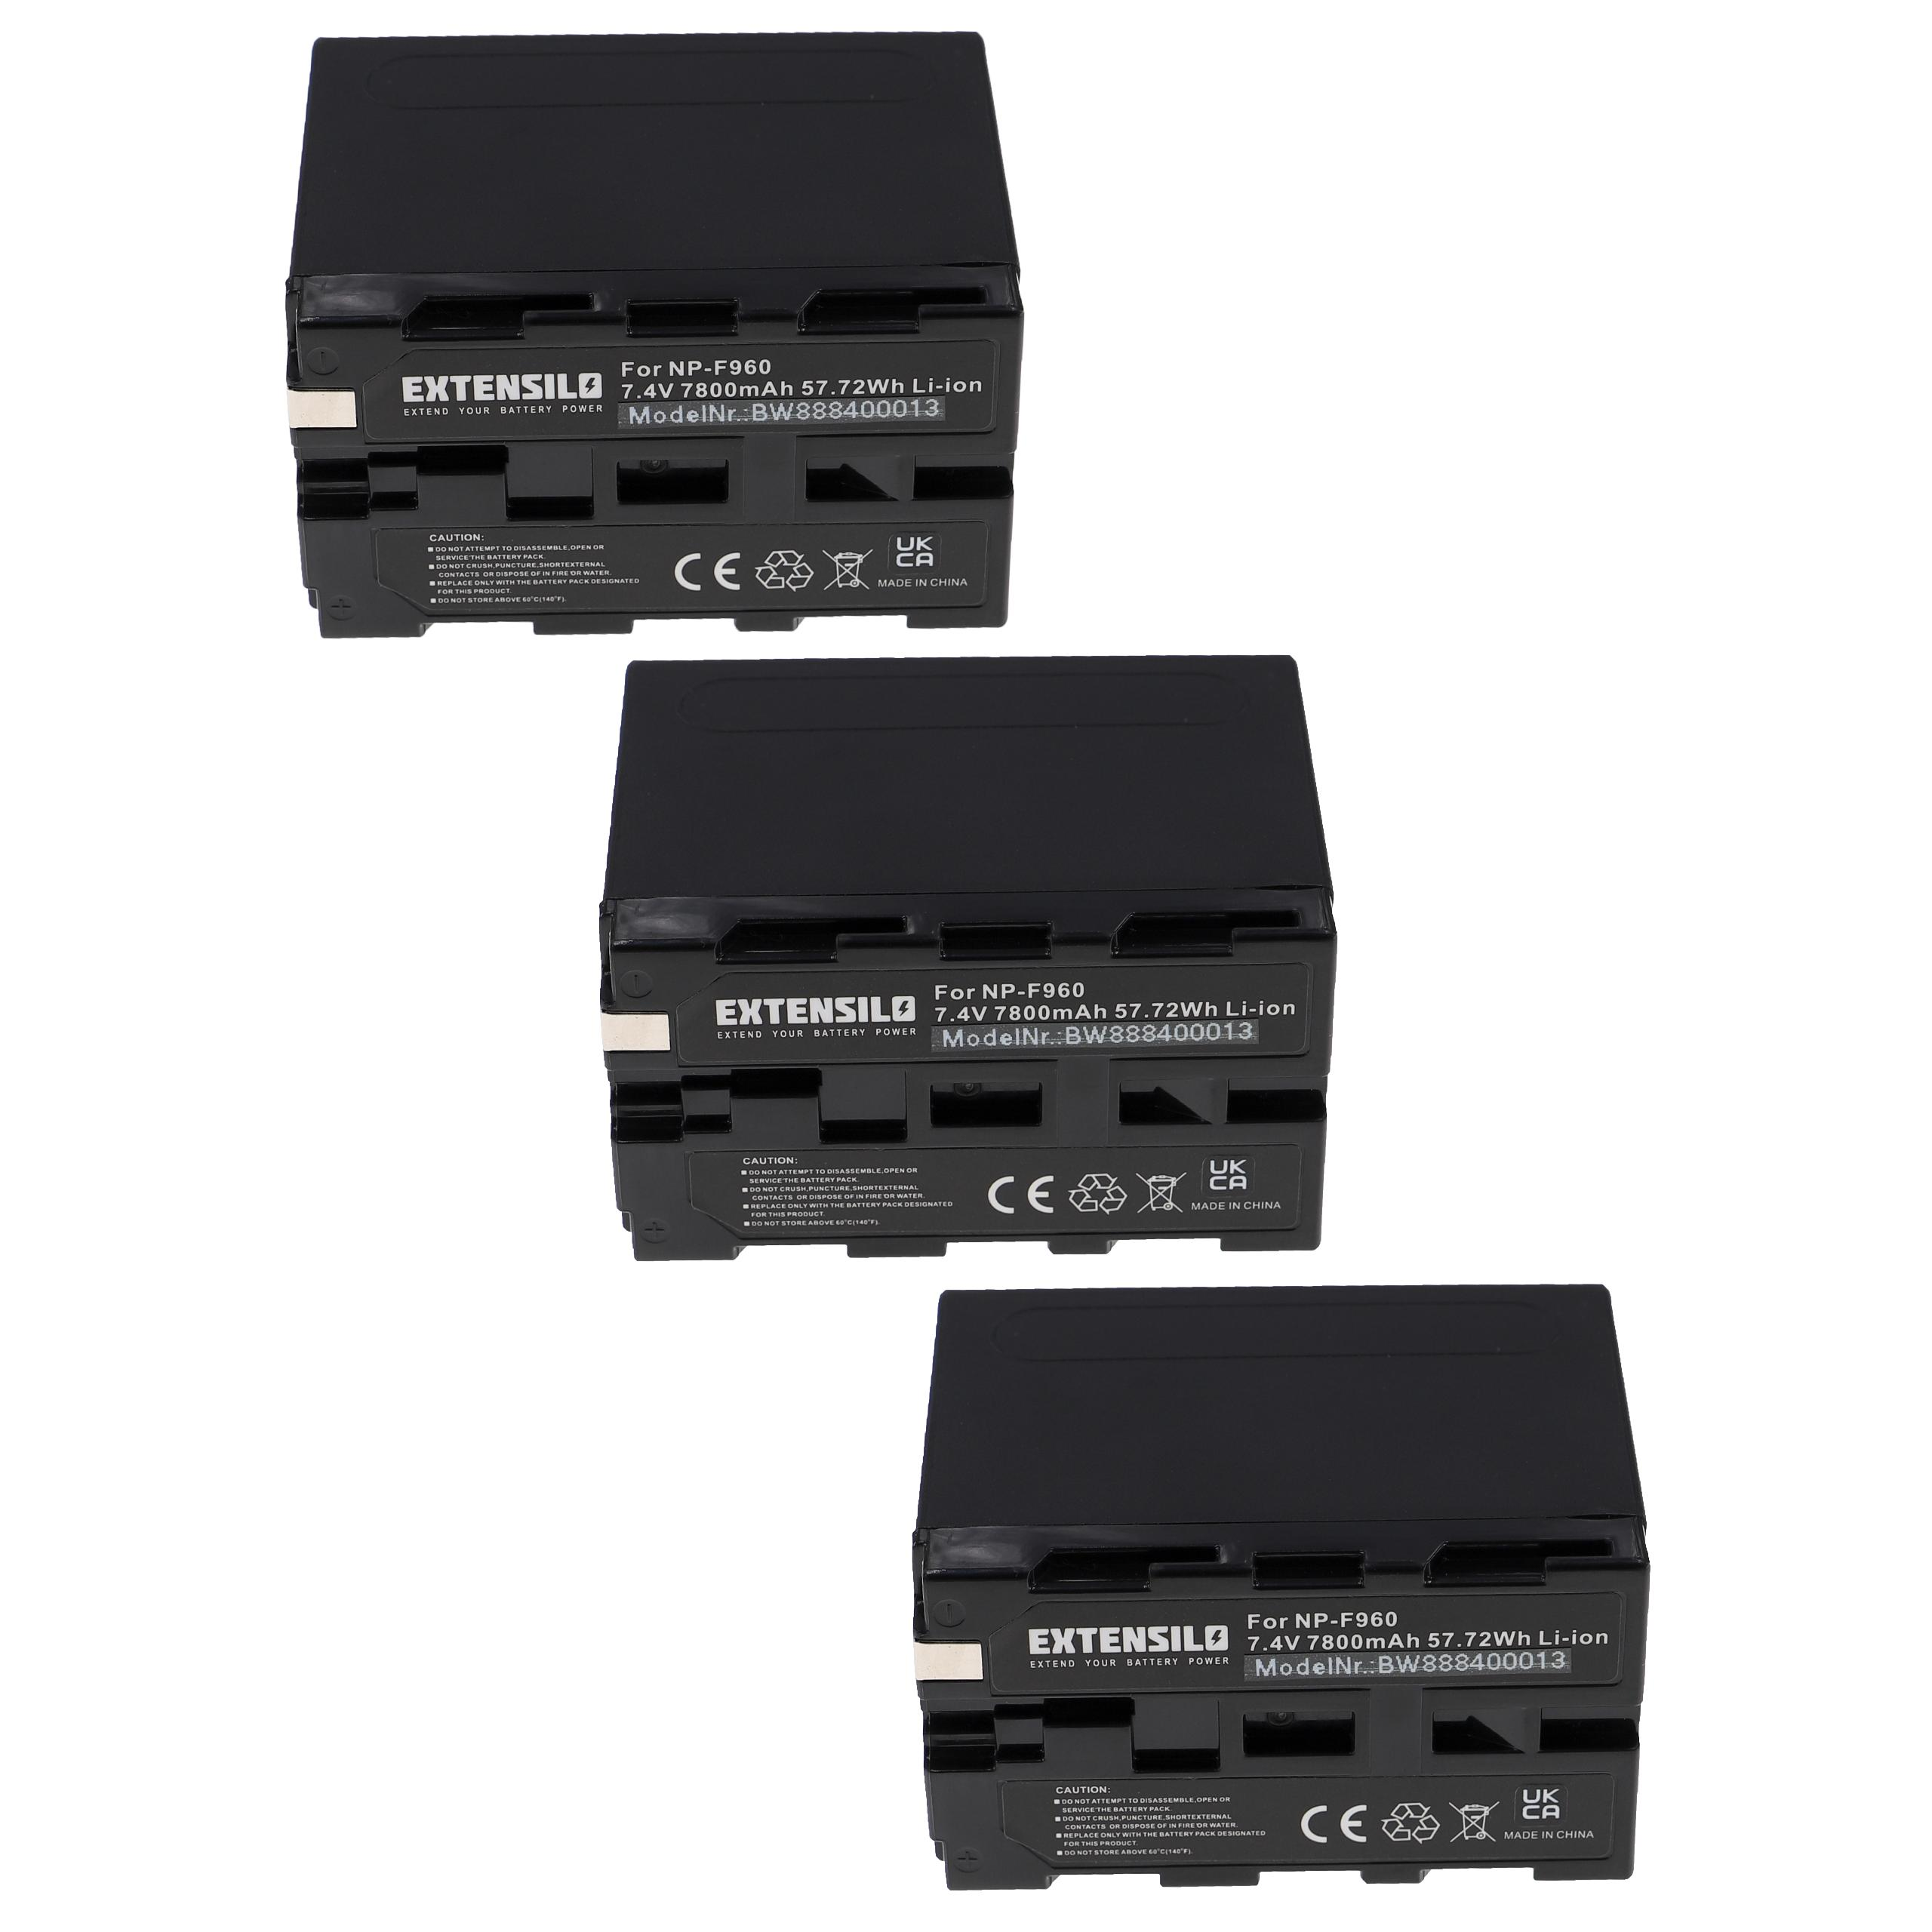 Sony CCD-TRV35, MiniDV CCD-TRV41, kompatibel 7800 - EXTENSILO Akku CCD-TRV37, CCD-TRV36 mit Volt, Li-Ion Kamera, CCD-TRV3000, 7.4 CCD-TRV4,